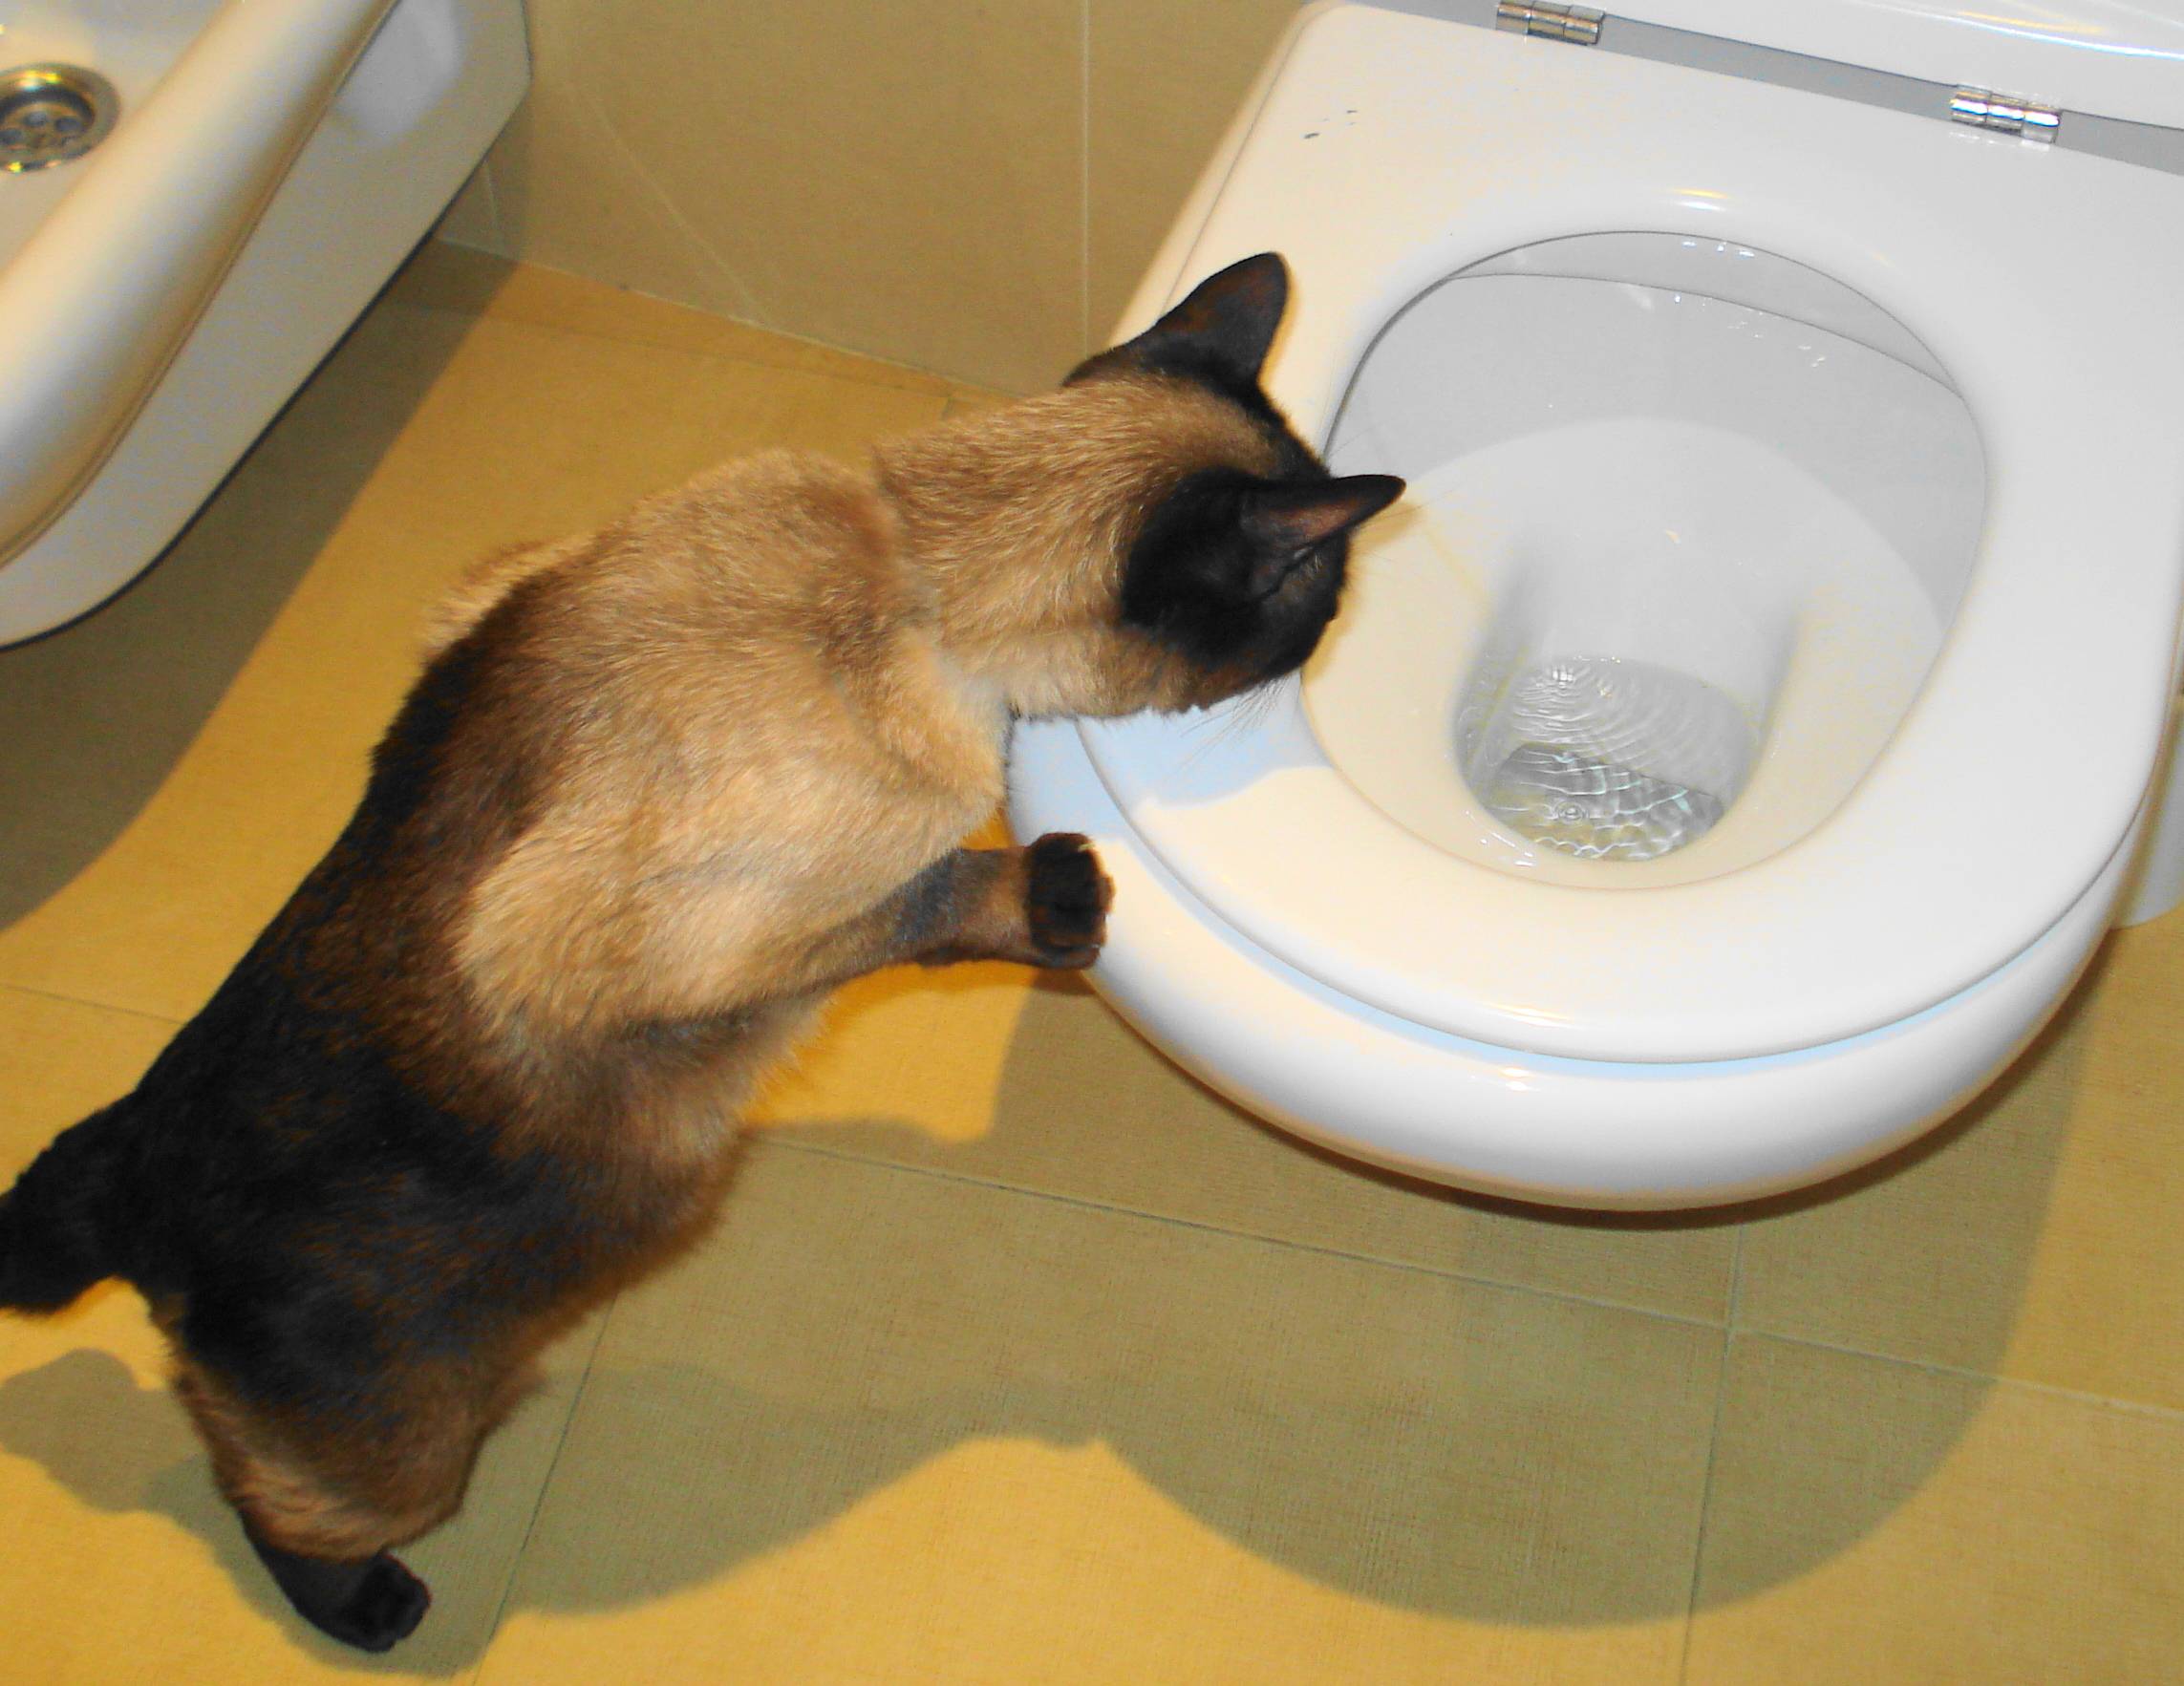 Кот часто ходит в туалет по-маленькому по чуть-чуть
кот часто ходит в туалет по-маленькому по чуть-чуть